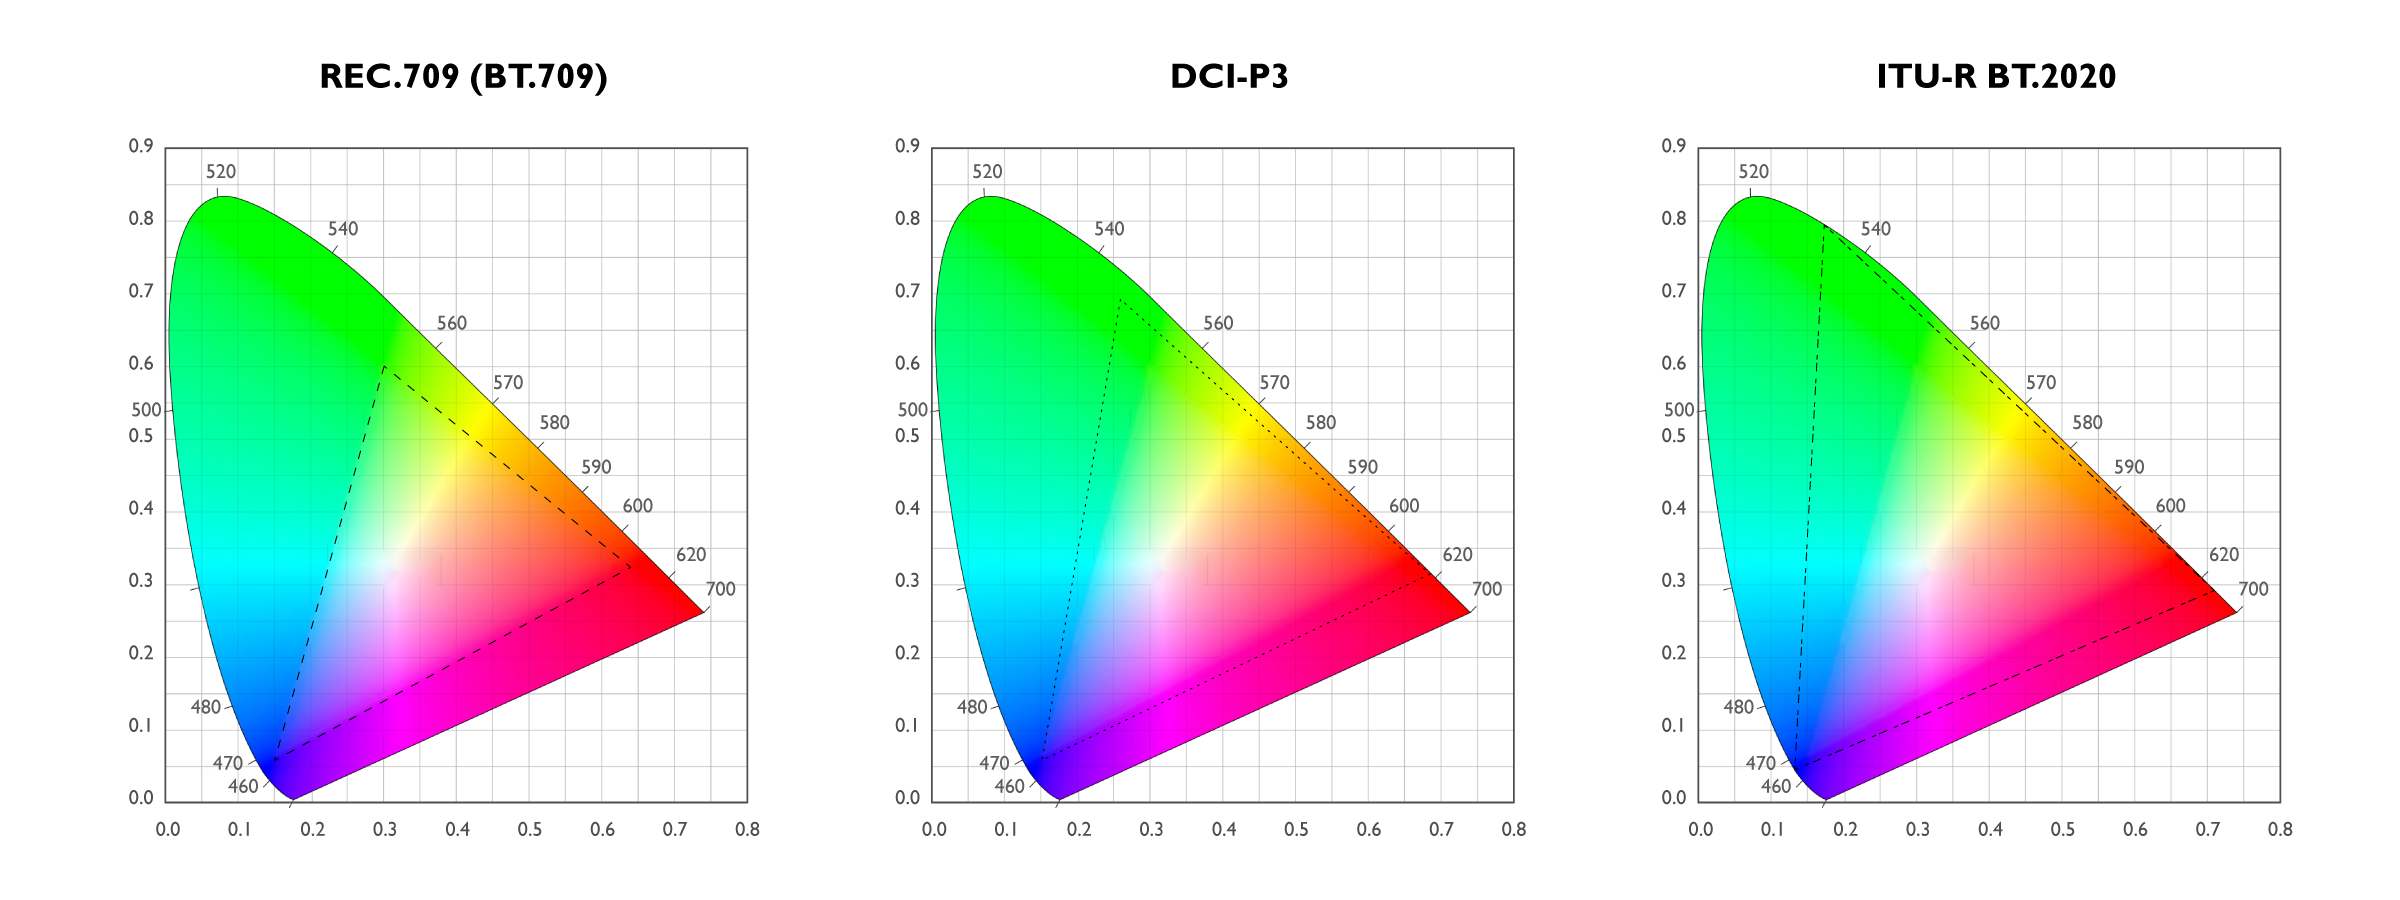 BenQ Proiector În domeniul reproducerii culorilor, experţii folosesc termenul de gamă de culori pentru a descrie gama de culori din spectrul general al culorilor vizibile (cunoscut şi sub numele de spaţiu de culoare) pe care un dispozitiv de imagistică - în cazul nostru, un proiector - este capabil să o reproducă; puteţi să vă gândiţi la aceasta ca la o paletă de culori a unui pictor. Ca atare, un proiector cu o gamă de culori mai largă este, prin definiţie, capabil să reproducă mai multe culori din spectrul vizibil.